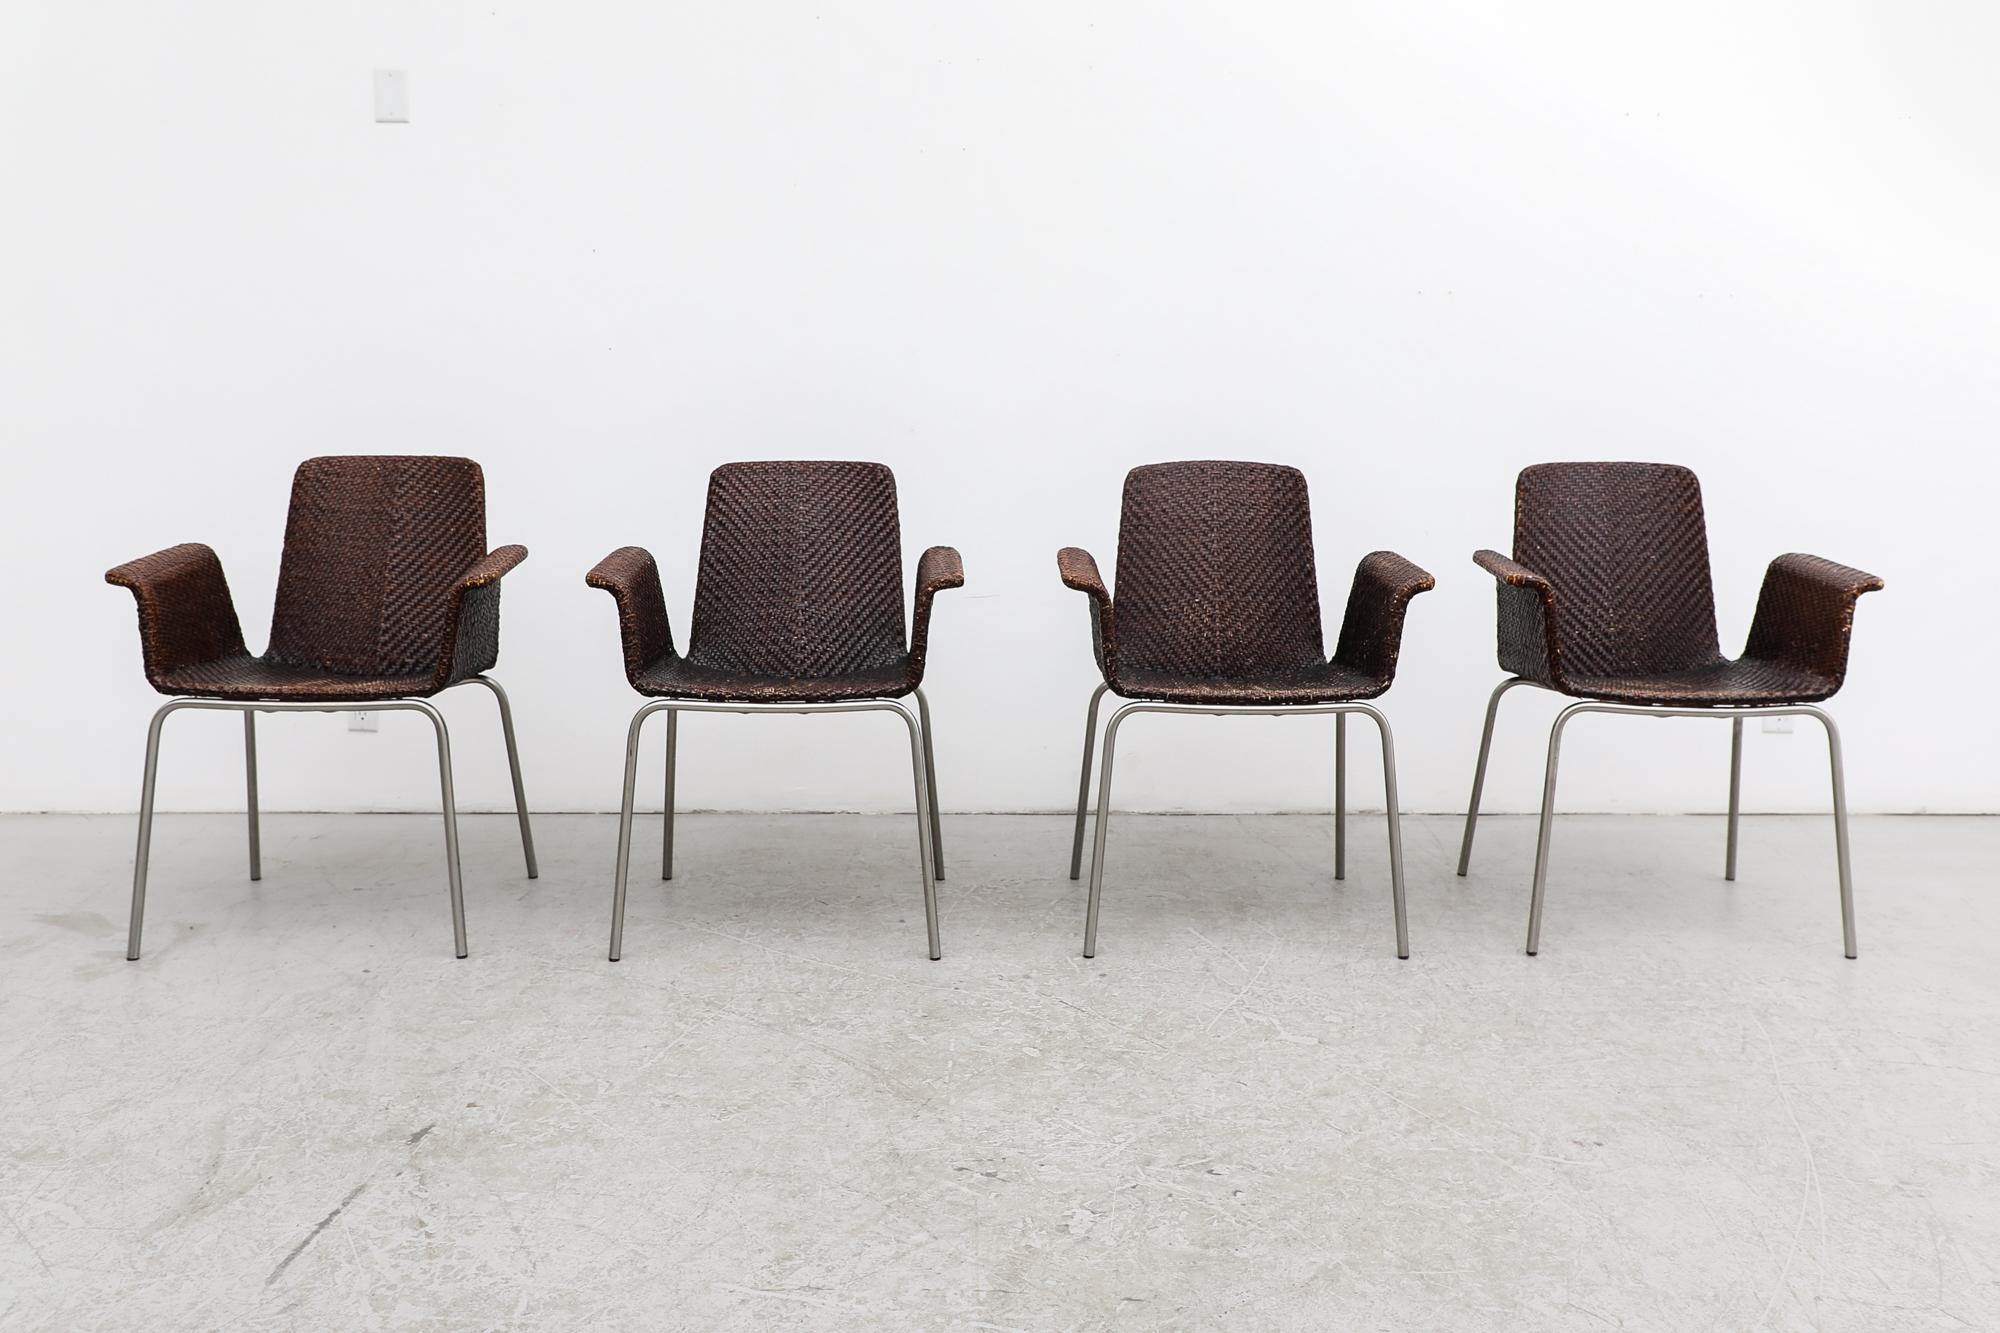 Ensemble de 4 fauteuils de salle à manger en cuir tressé vintage, inspiré de Preben Fabricius, avec pieds chromés. En état d'origine avec une usure visible correspondant à leur âge et à leur utilisation. Vendu en ensemble de 4. Illustré avec une